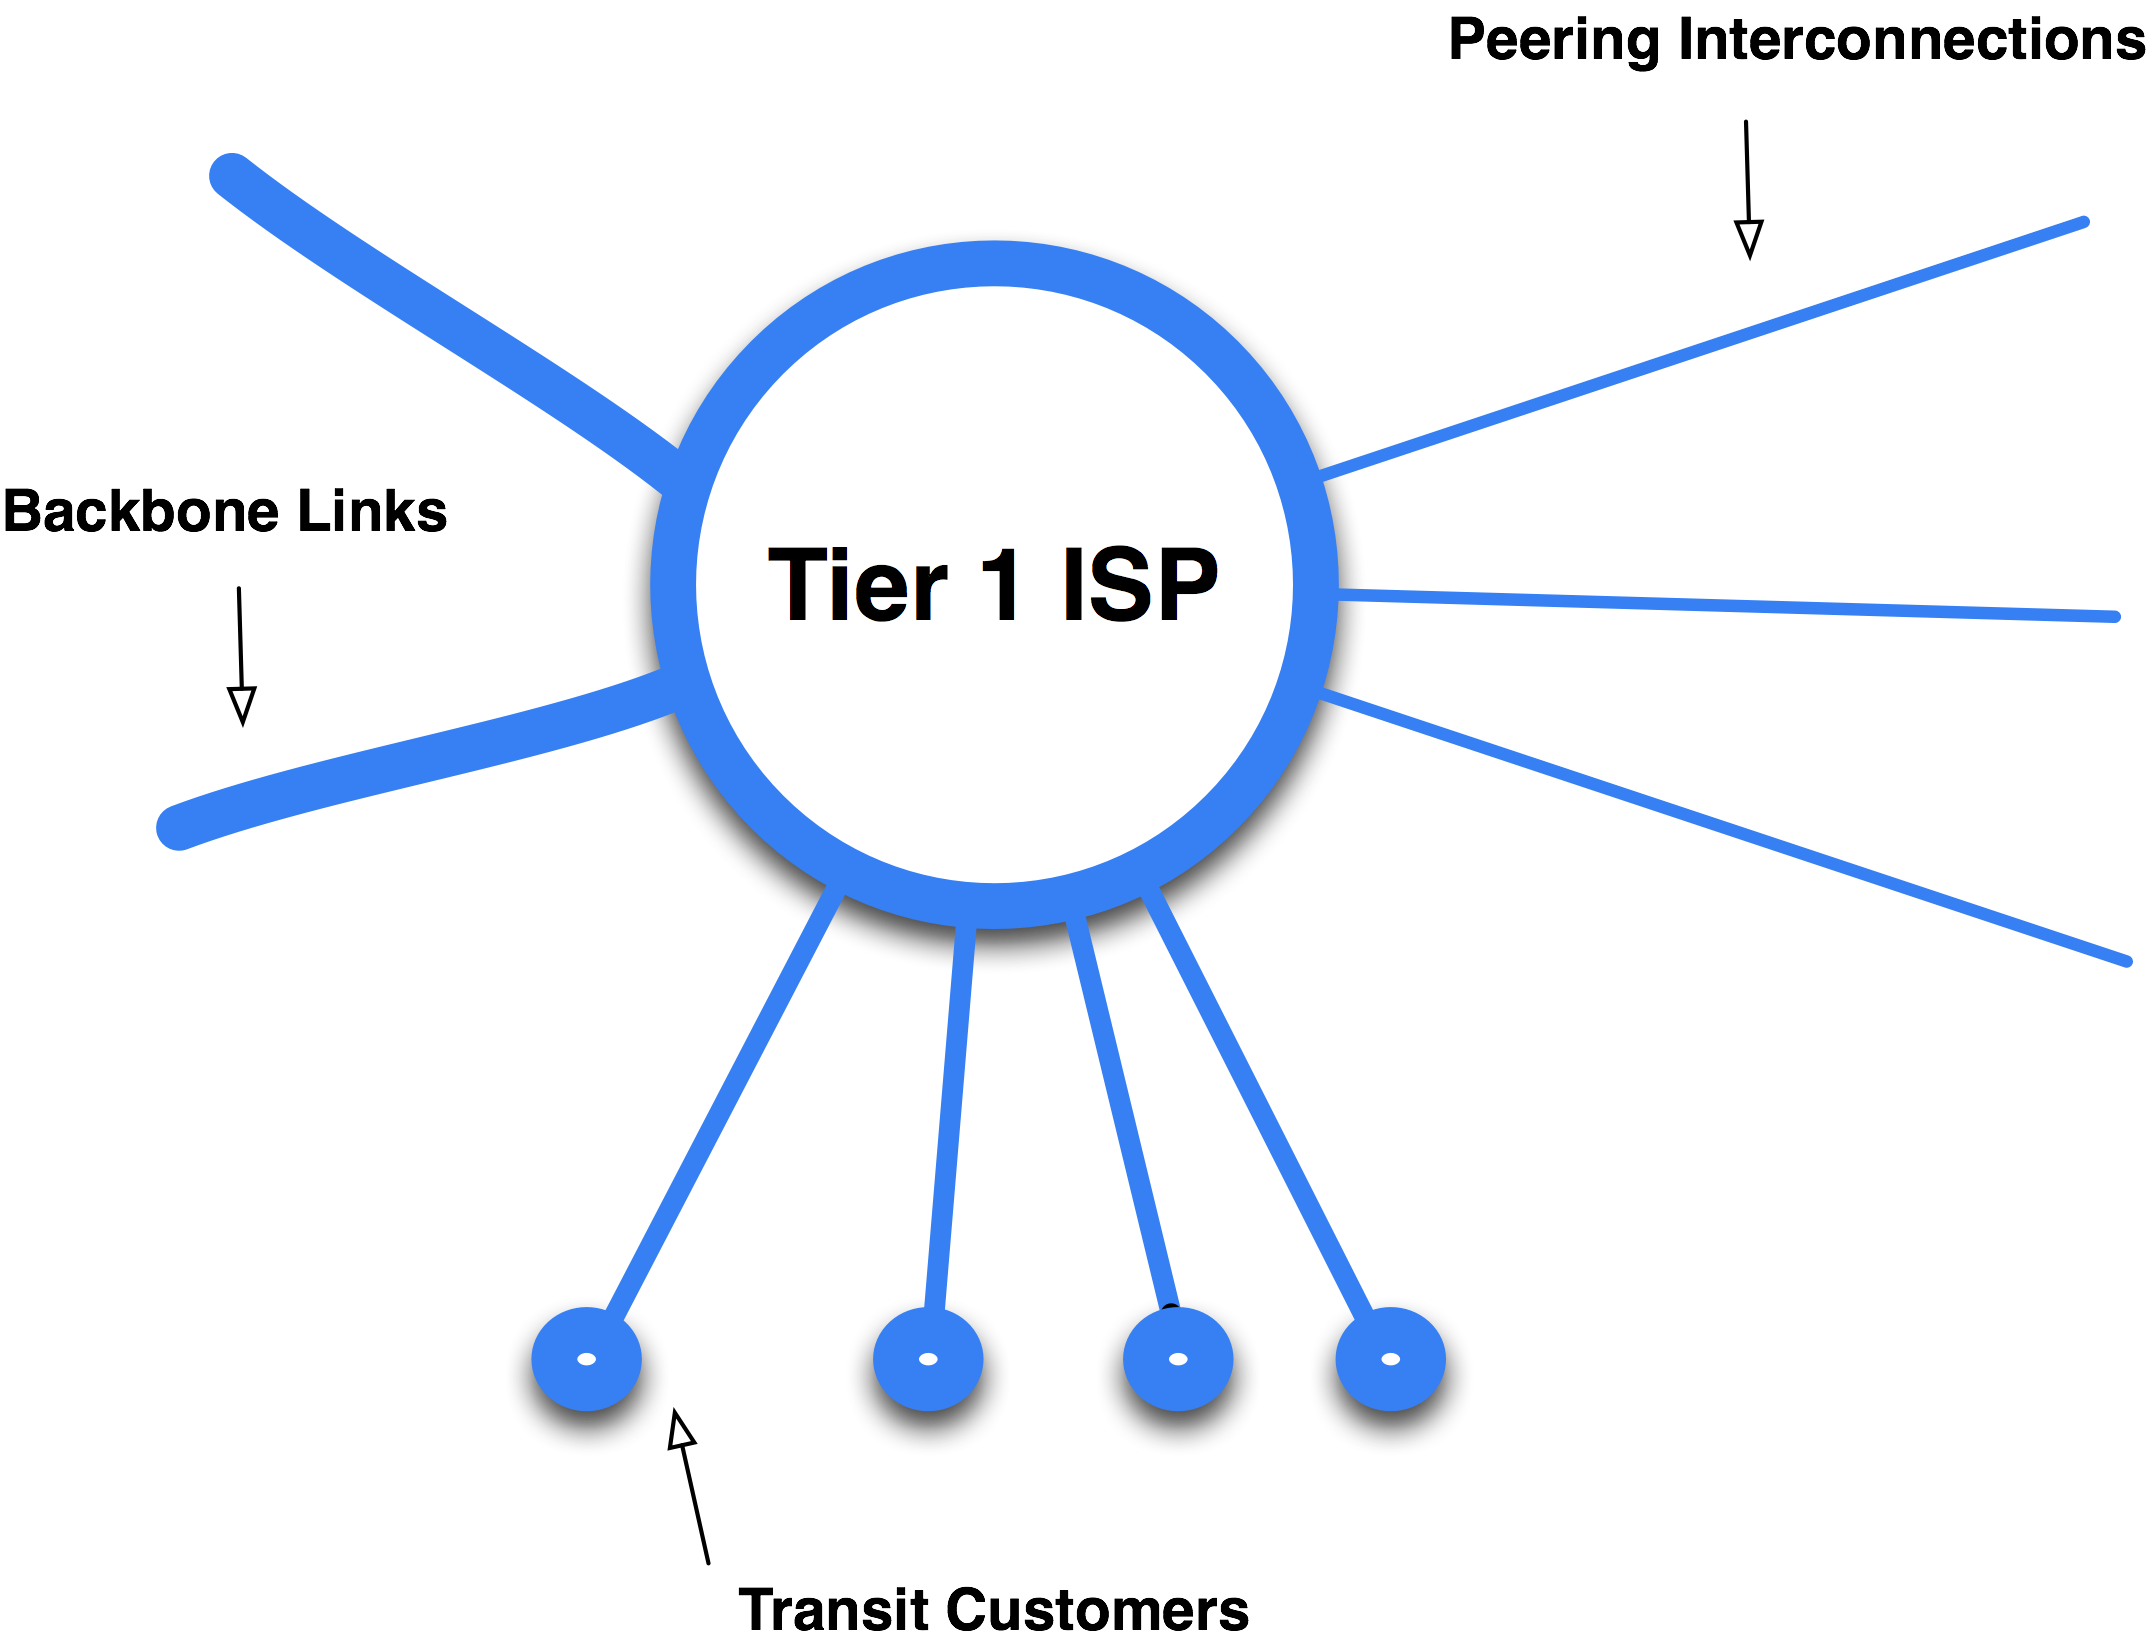 Tier 1 ISP